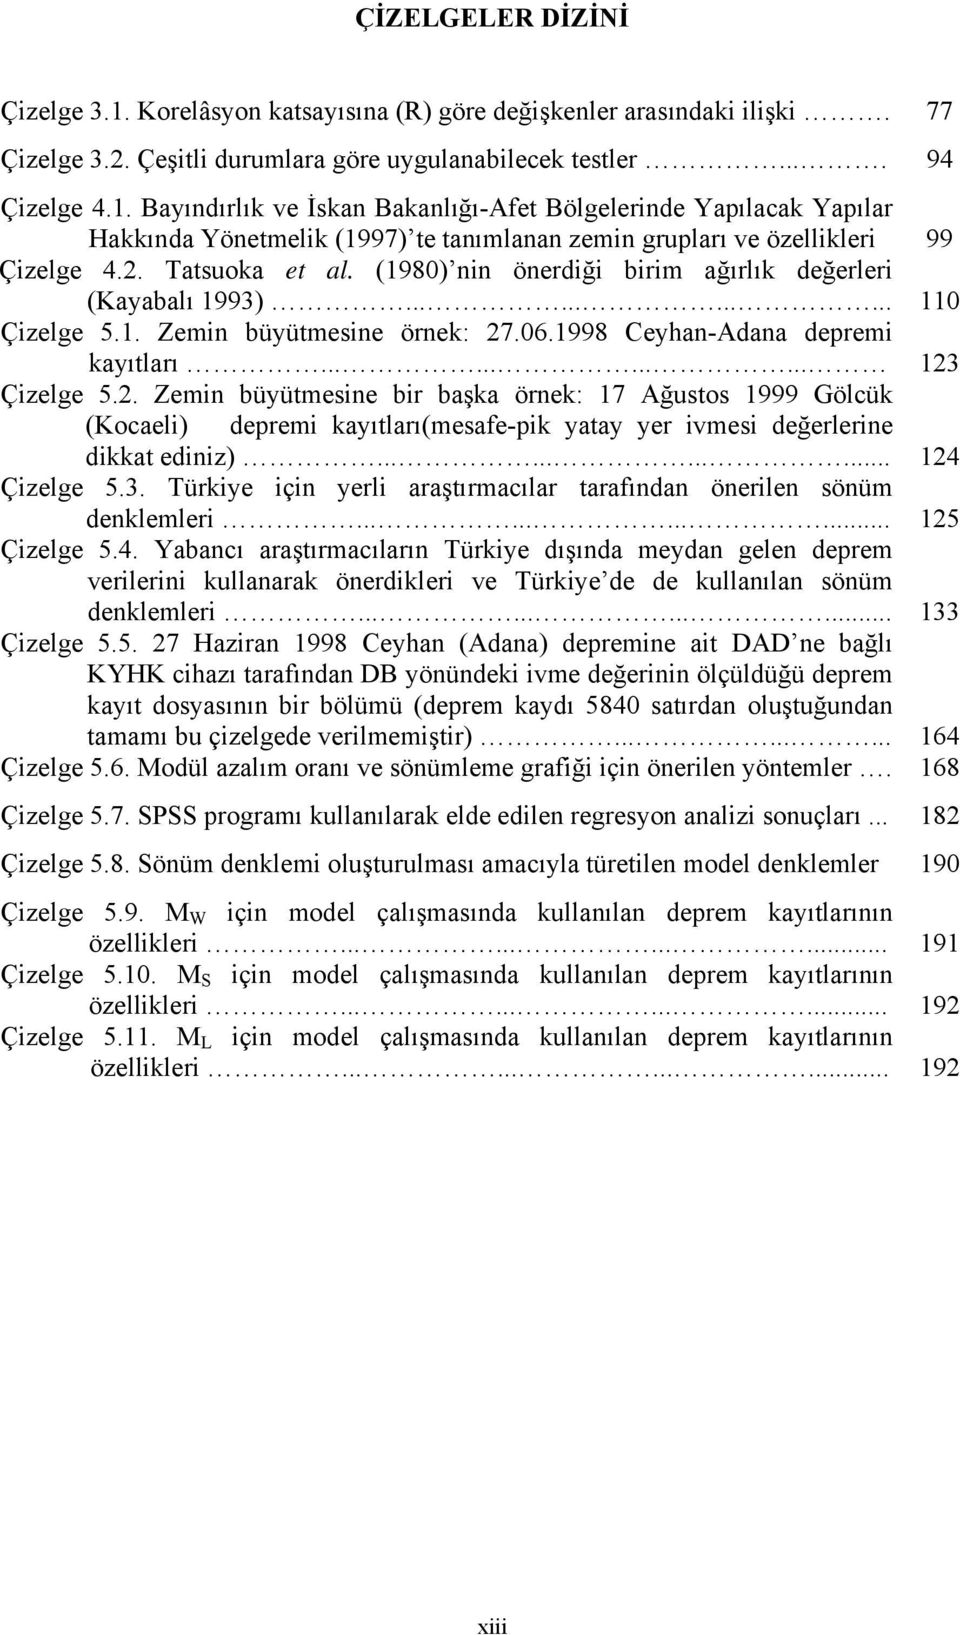 ........... 124 Çizelge 5.3. Türkiye için yerli araştırmacılar tarafından önerilen sönüm denklemleri............ 125 Çizelge 5.4. Yabancı araştırmacıların Türkiye dışında meydan gelen deprem verilerini kullanarak önerdikleri ve Türkiye de de kullanılan sönüm denklemleri.